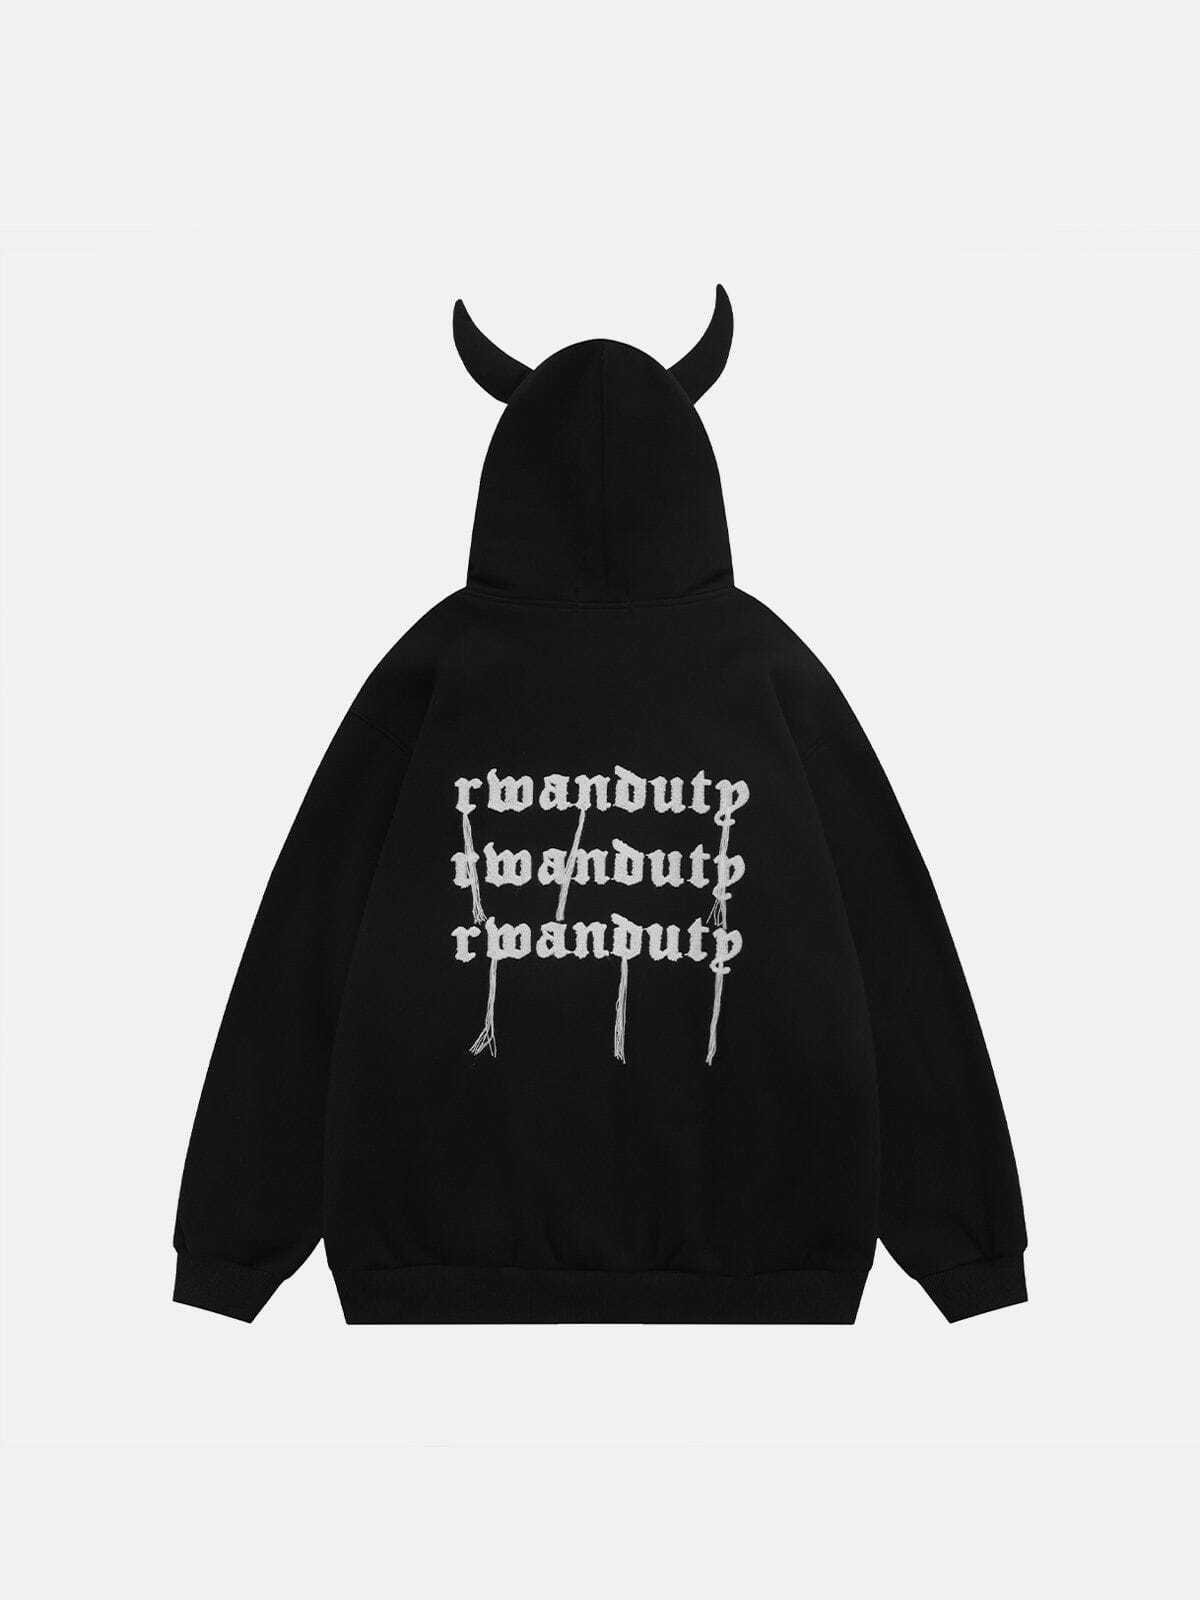 sleek devil head hoodie edgy streetwear icon 4165